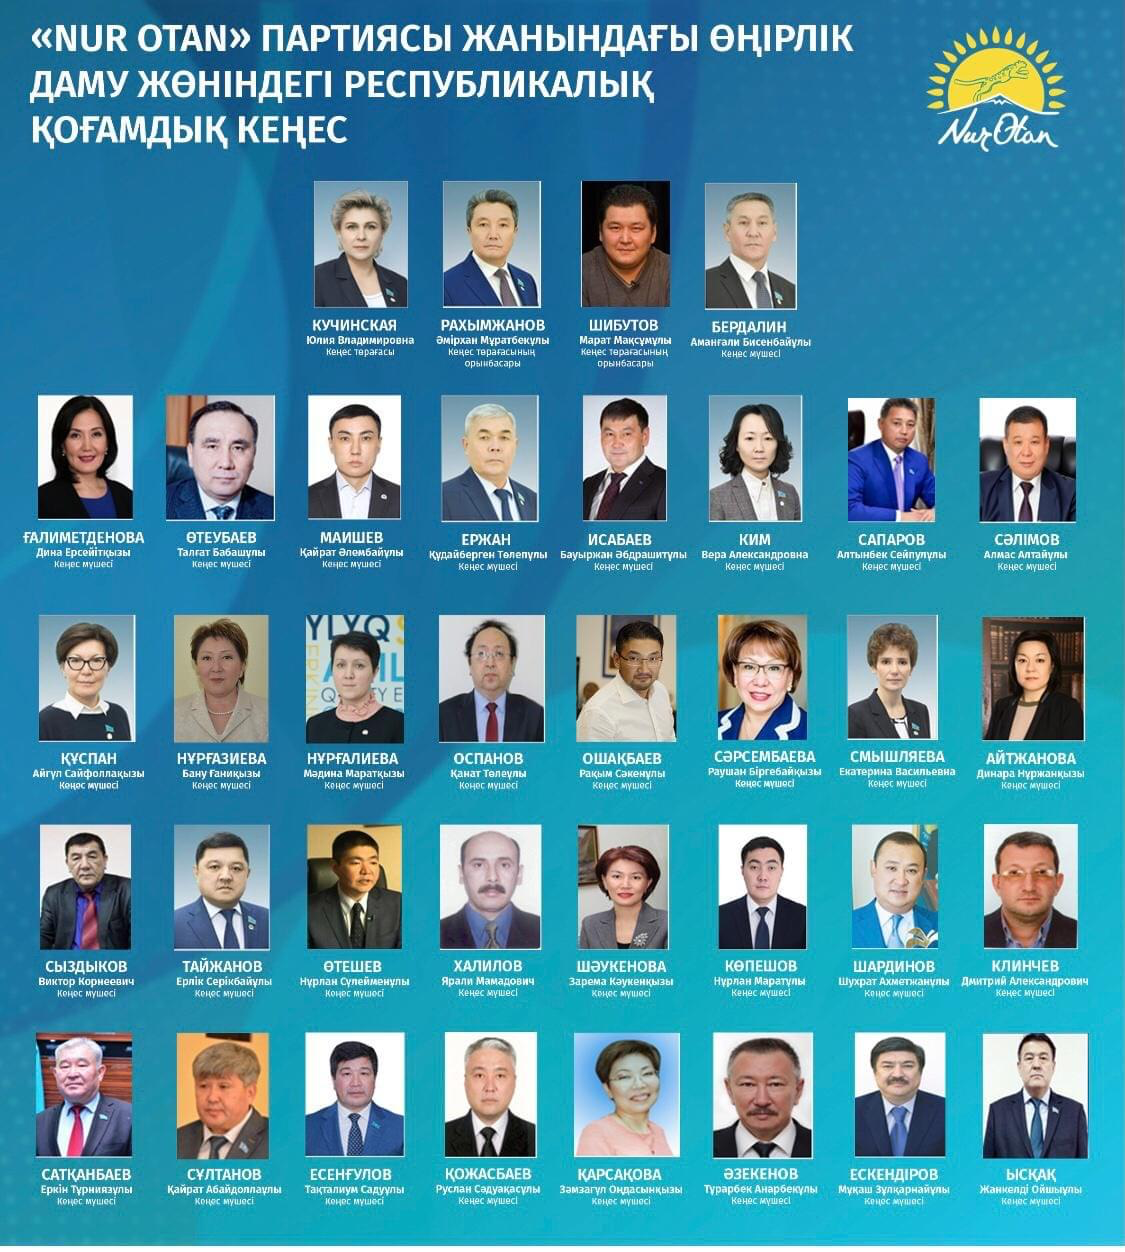 Утвержден состав Республиканского общественного Совета по региональному развитию при партии "Nur Otan"